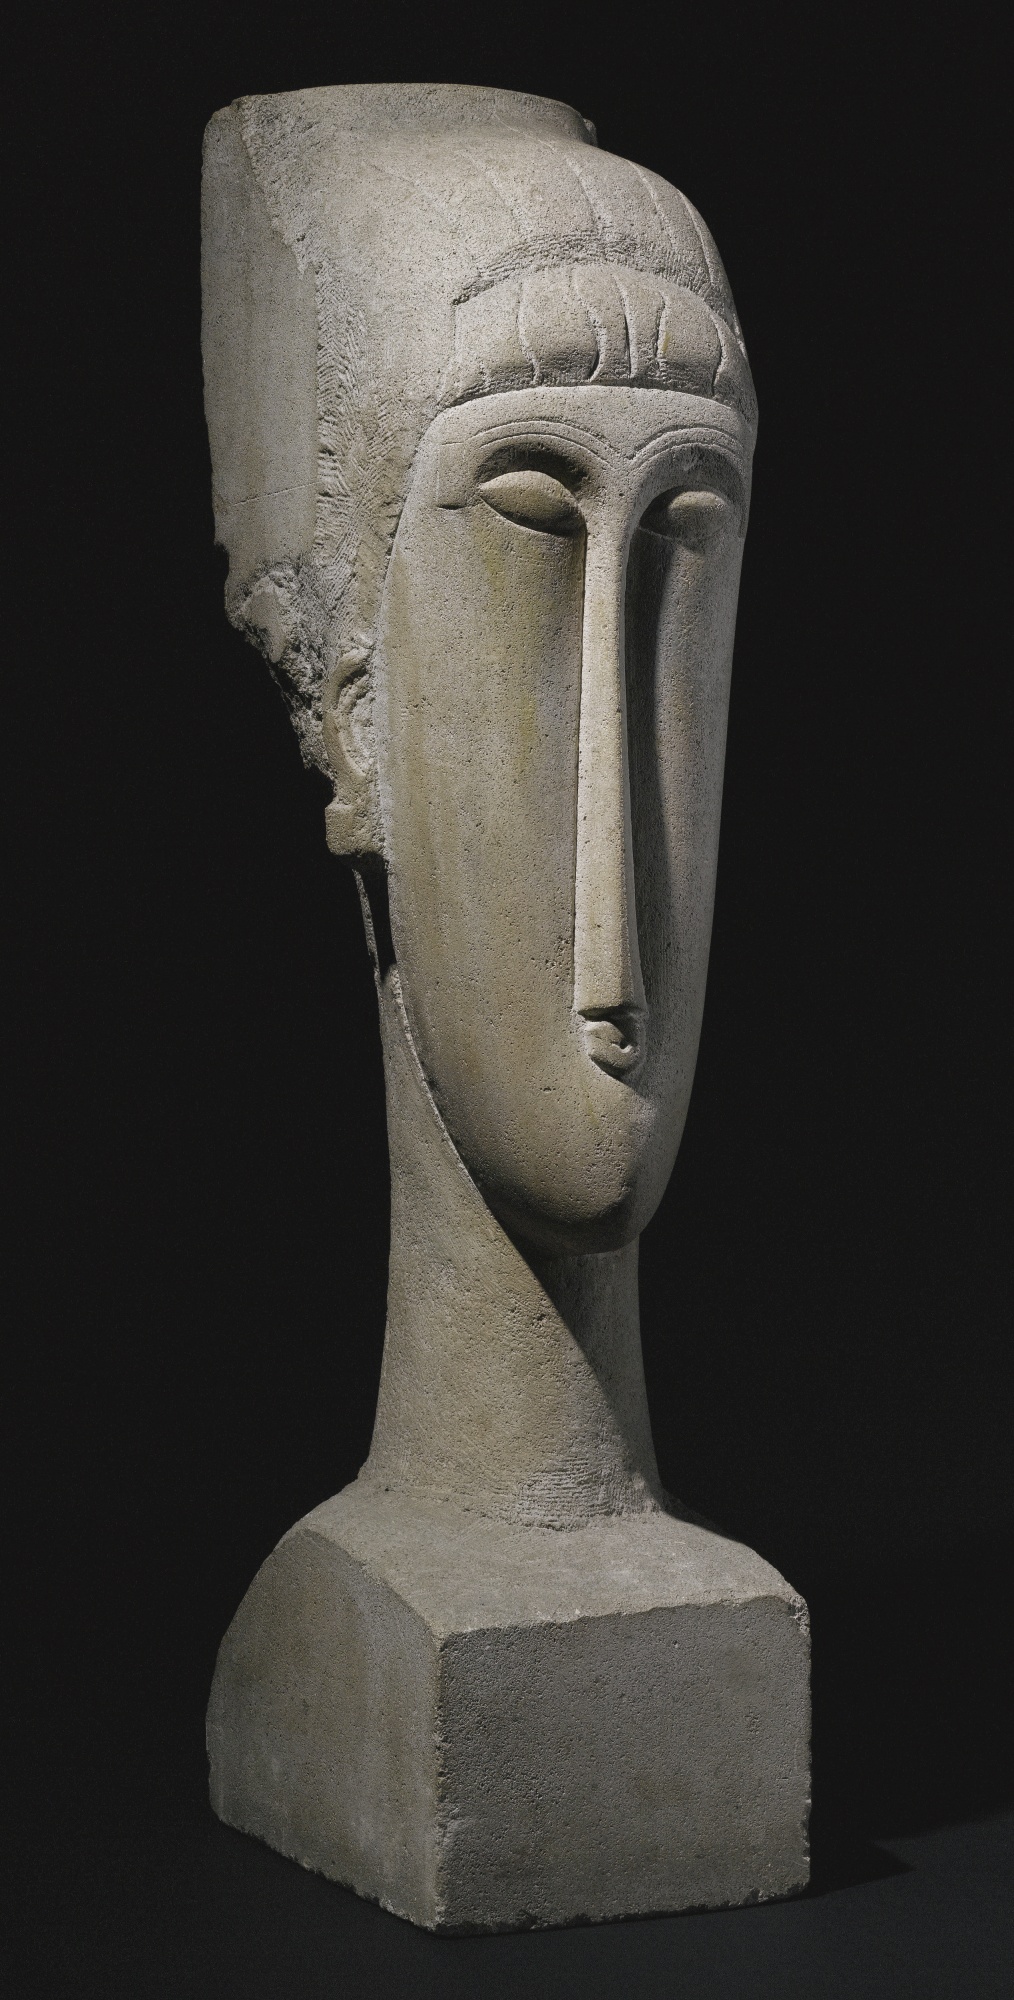 Скульптура «Голова» Амедео Модильяни продана за 70,7 миллиона долларов